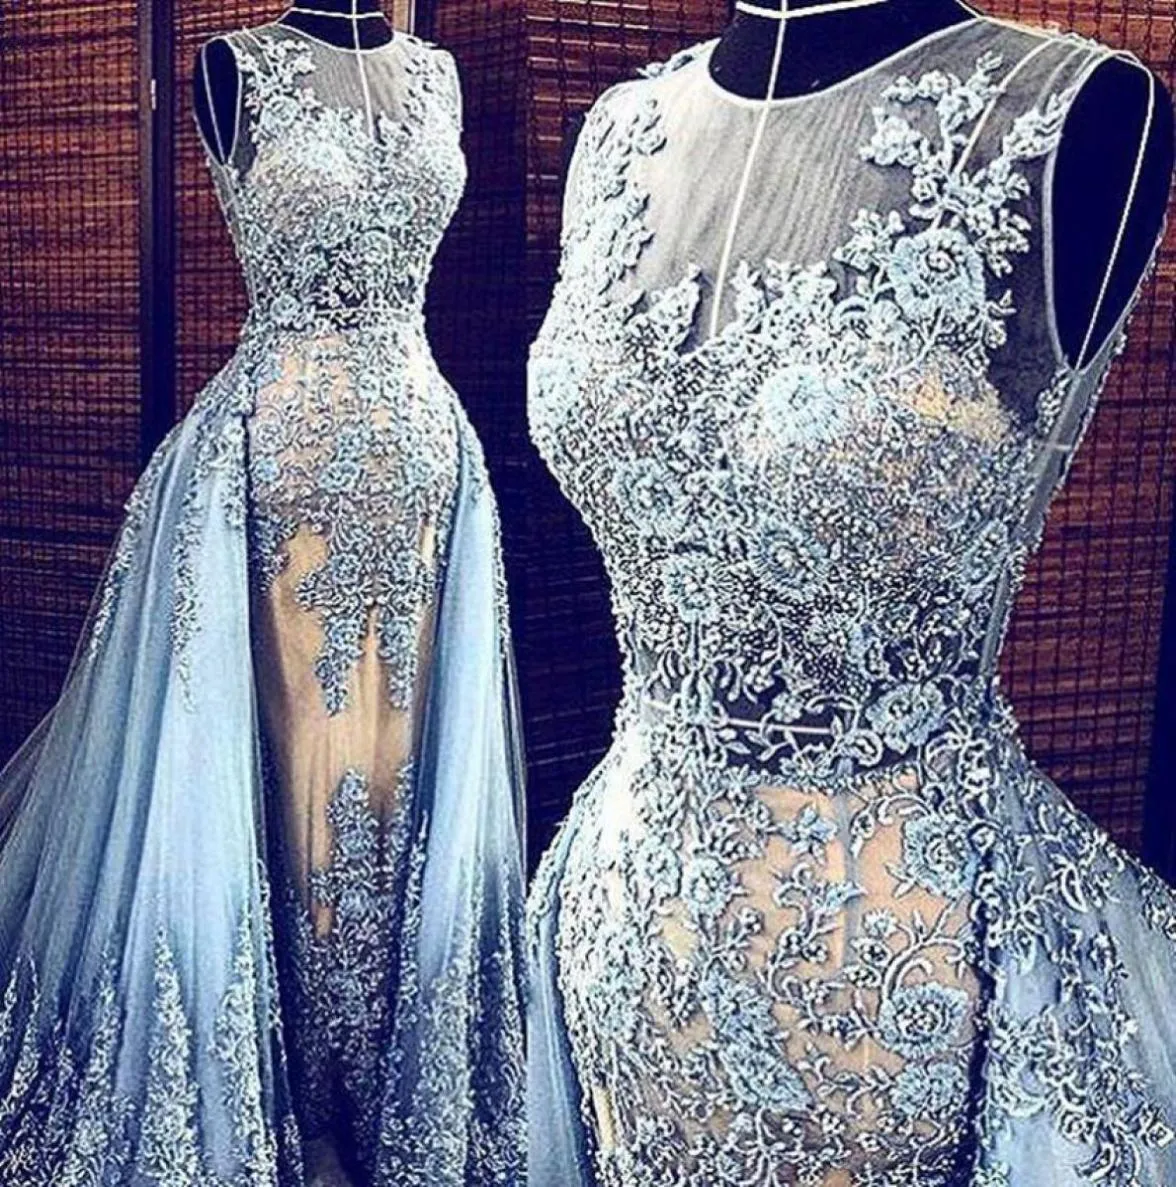 Кружева Эли Сааб Вечерние платья Сниженные юбки 2019 Appliques Beads Celebrity Prom Press Sequint